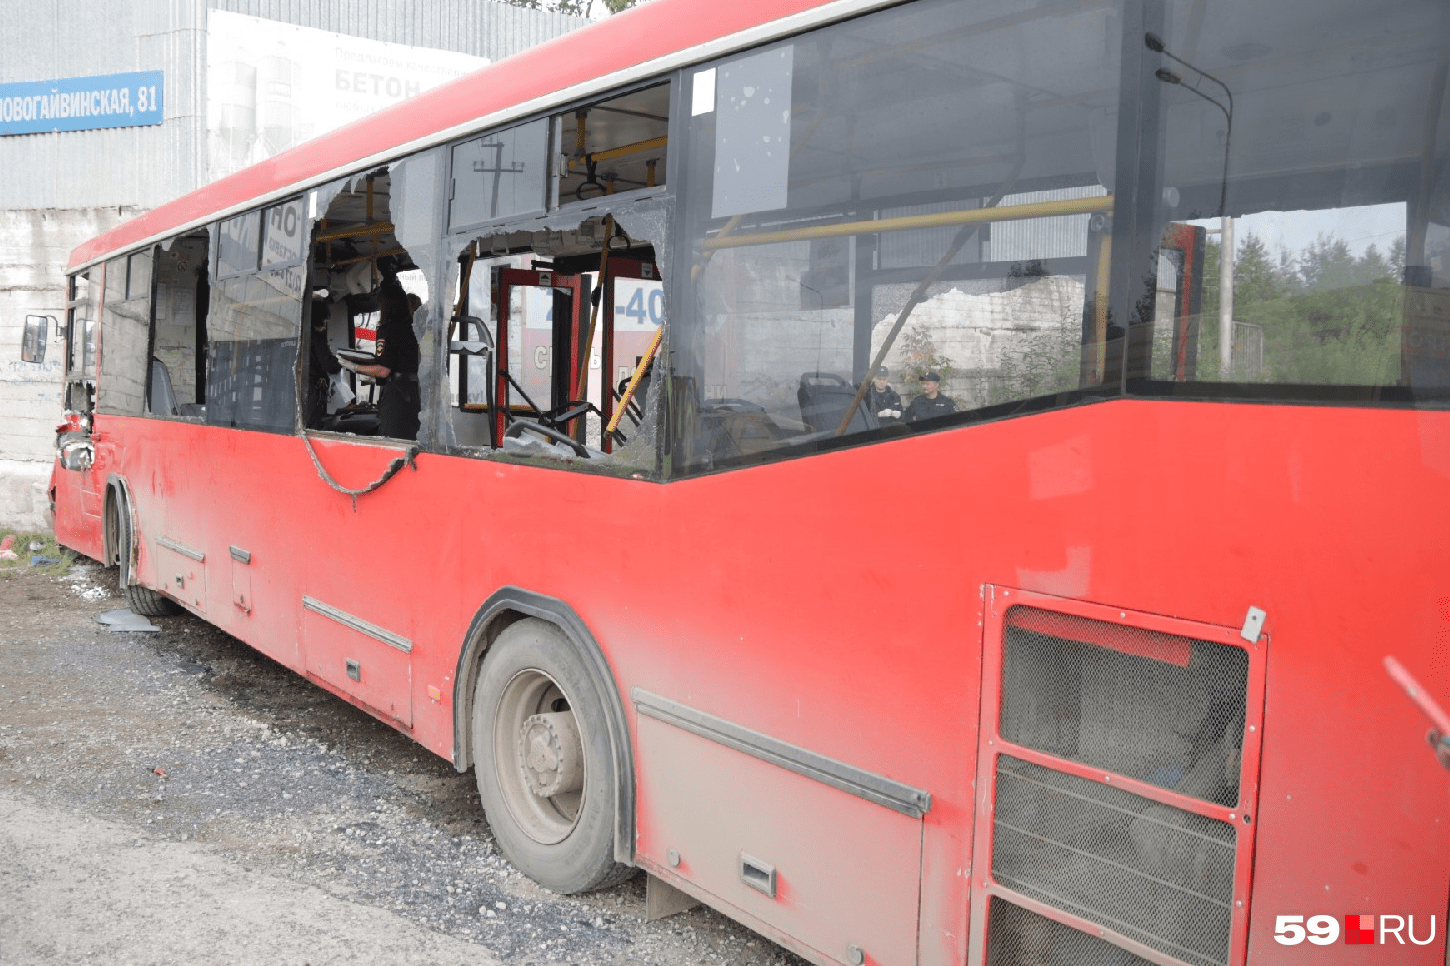 Окна в автобусе выбивали, чтобы быстрее эвакуировать людей